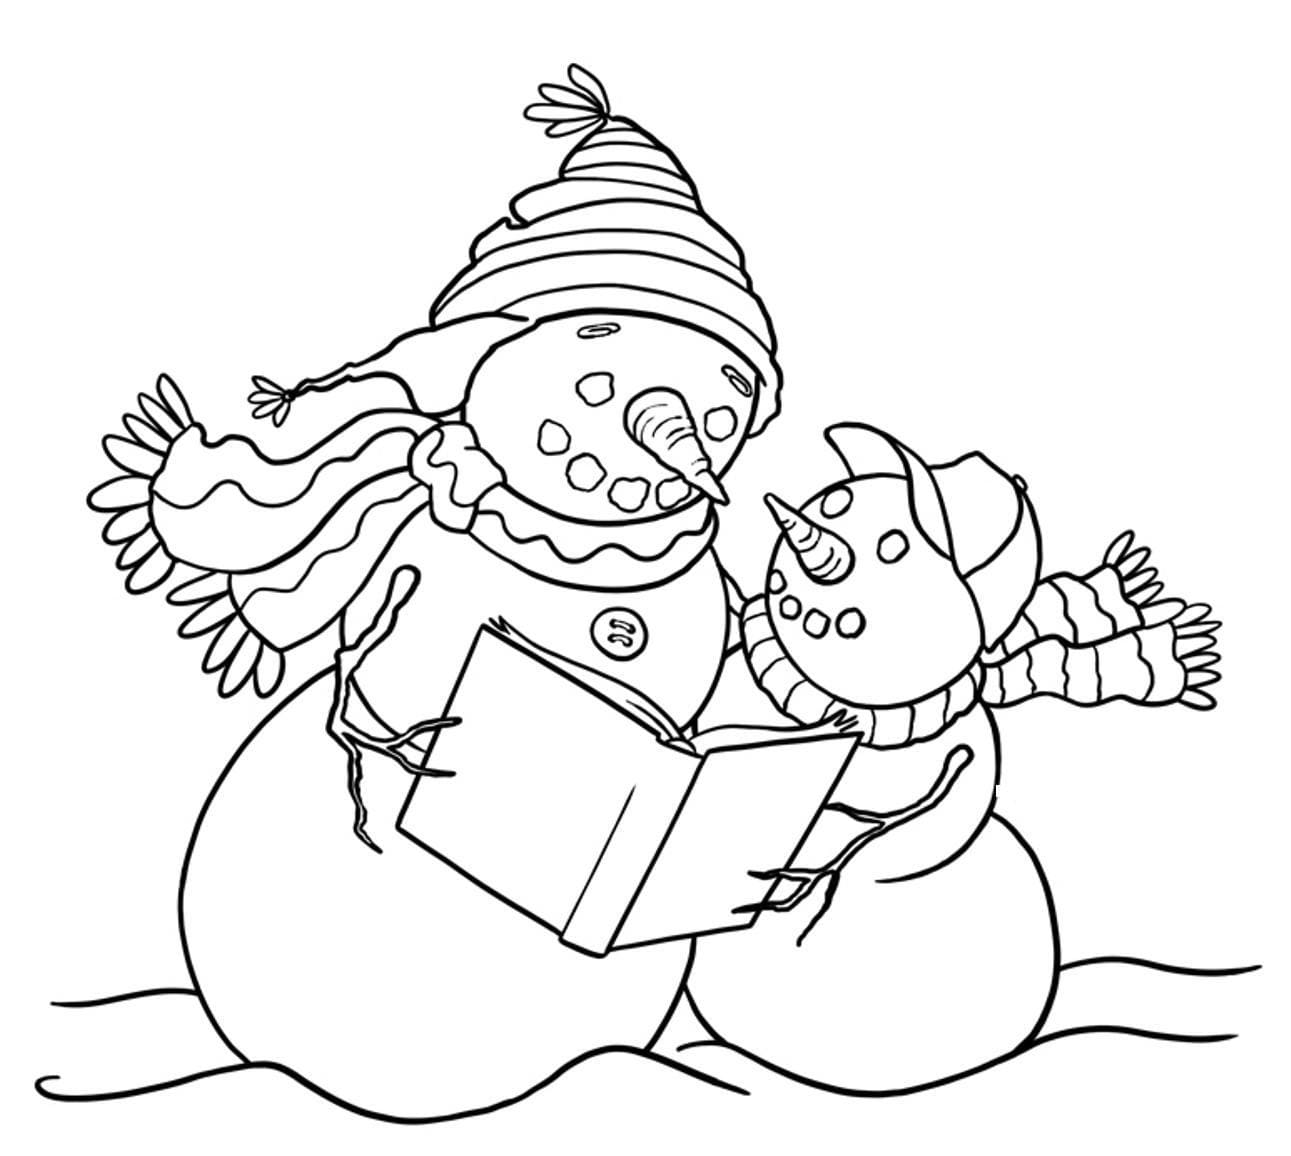 Deux Bonhommes de Neige coloring page